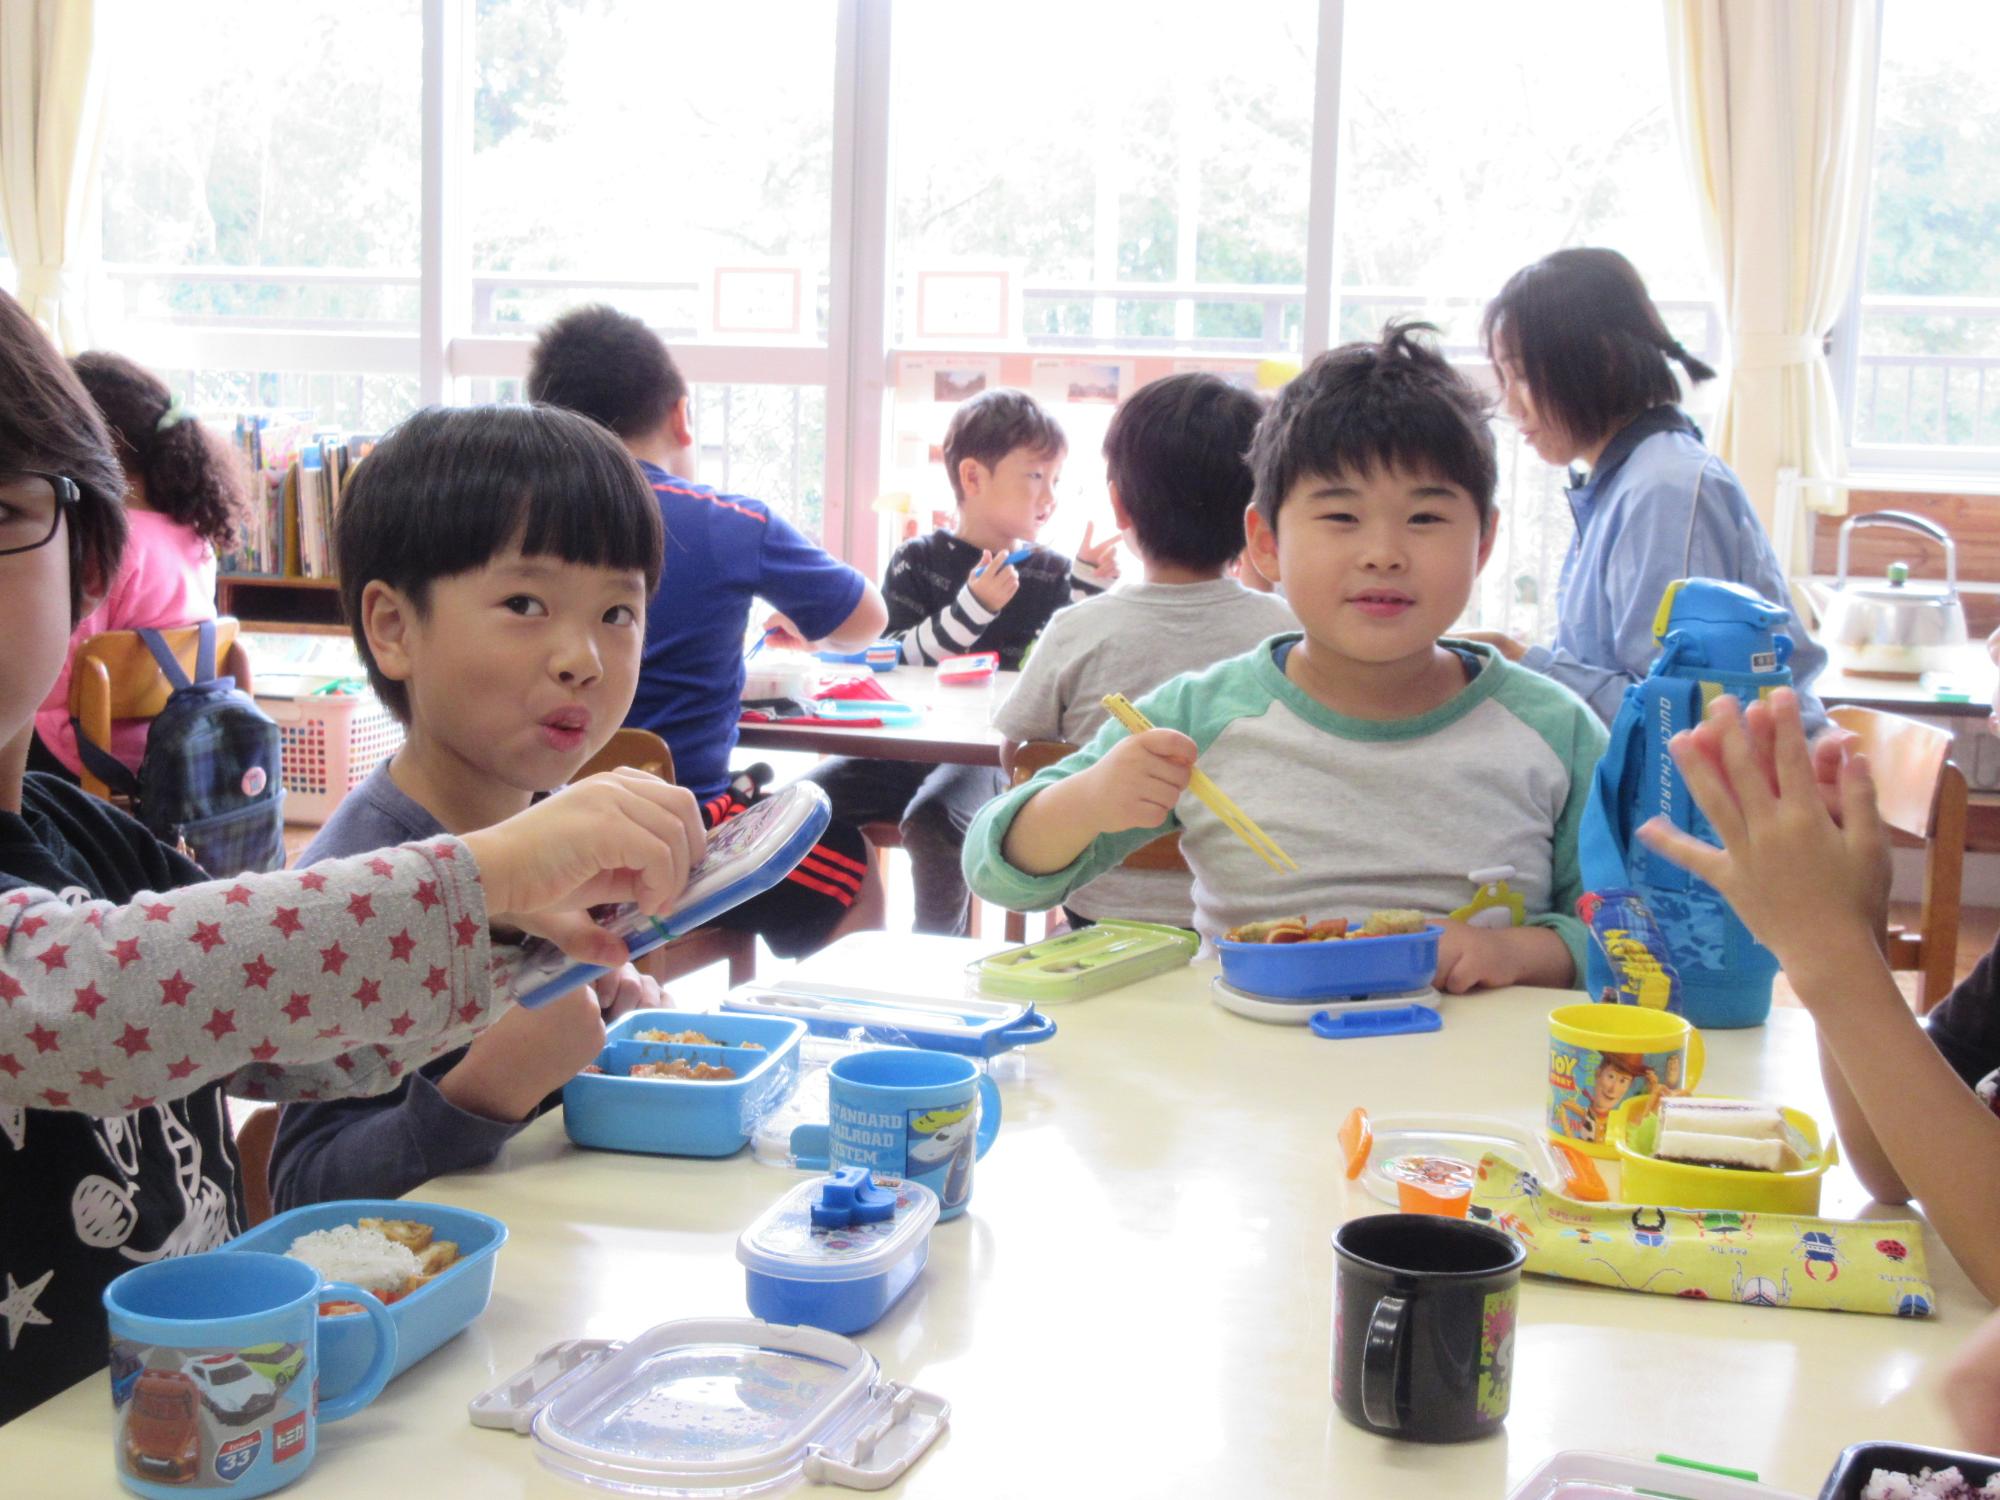 園児たちがグループに分かれて座り、机の上に置いたお弁当を食べている写真